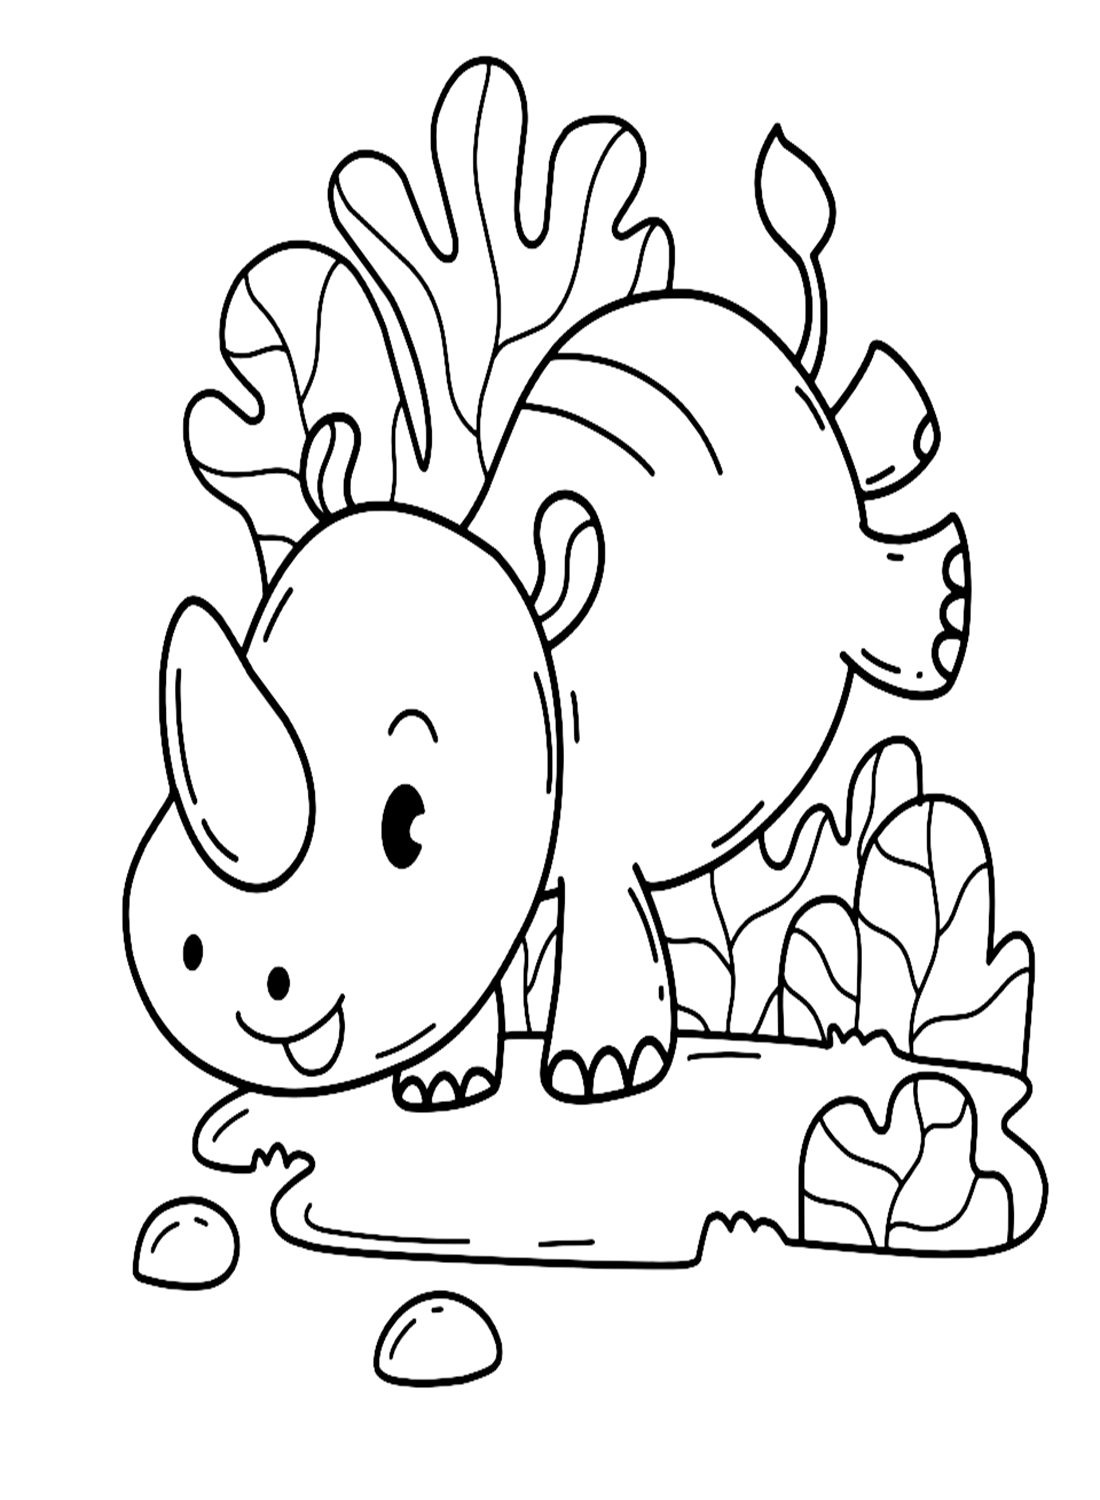 وحيد القرن رومبينج من وحيد القرن